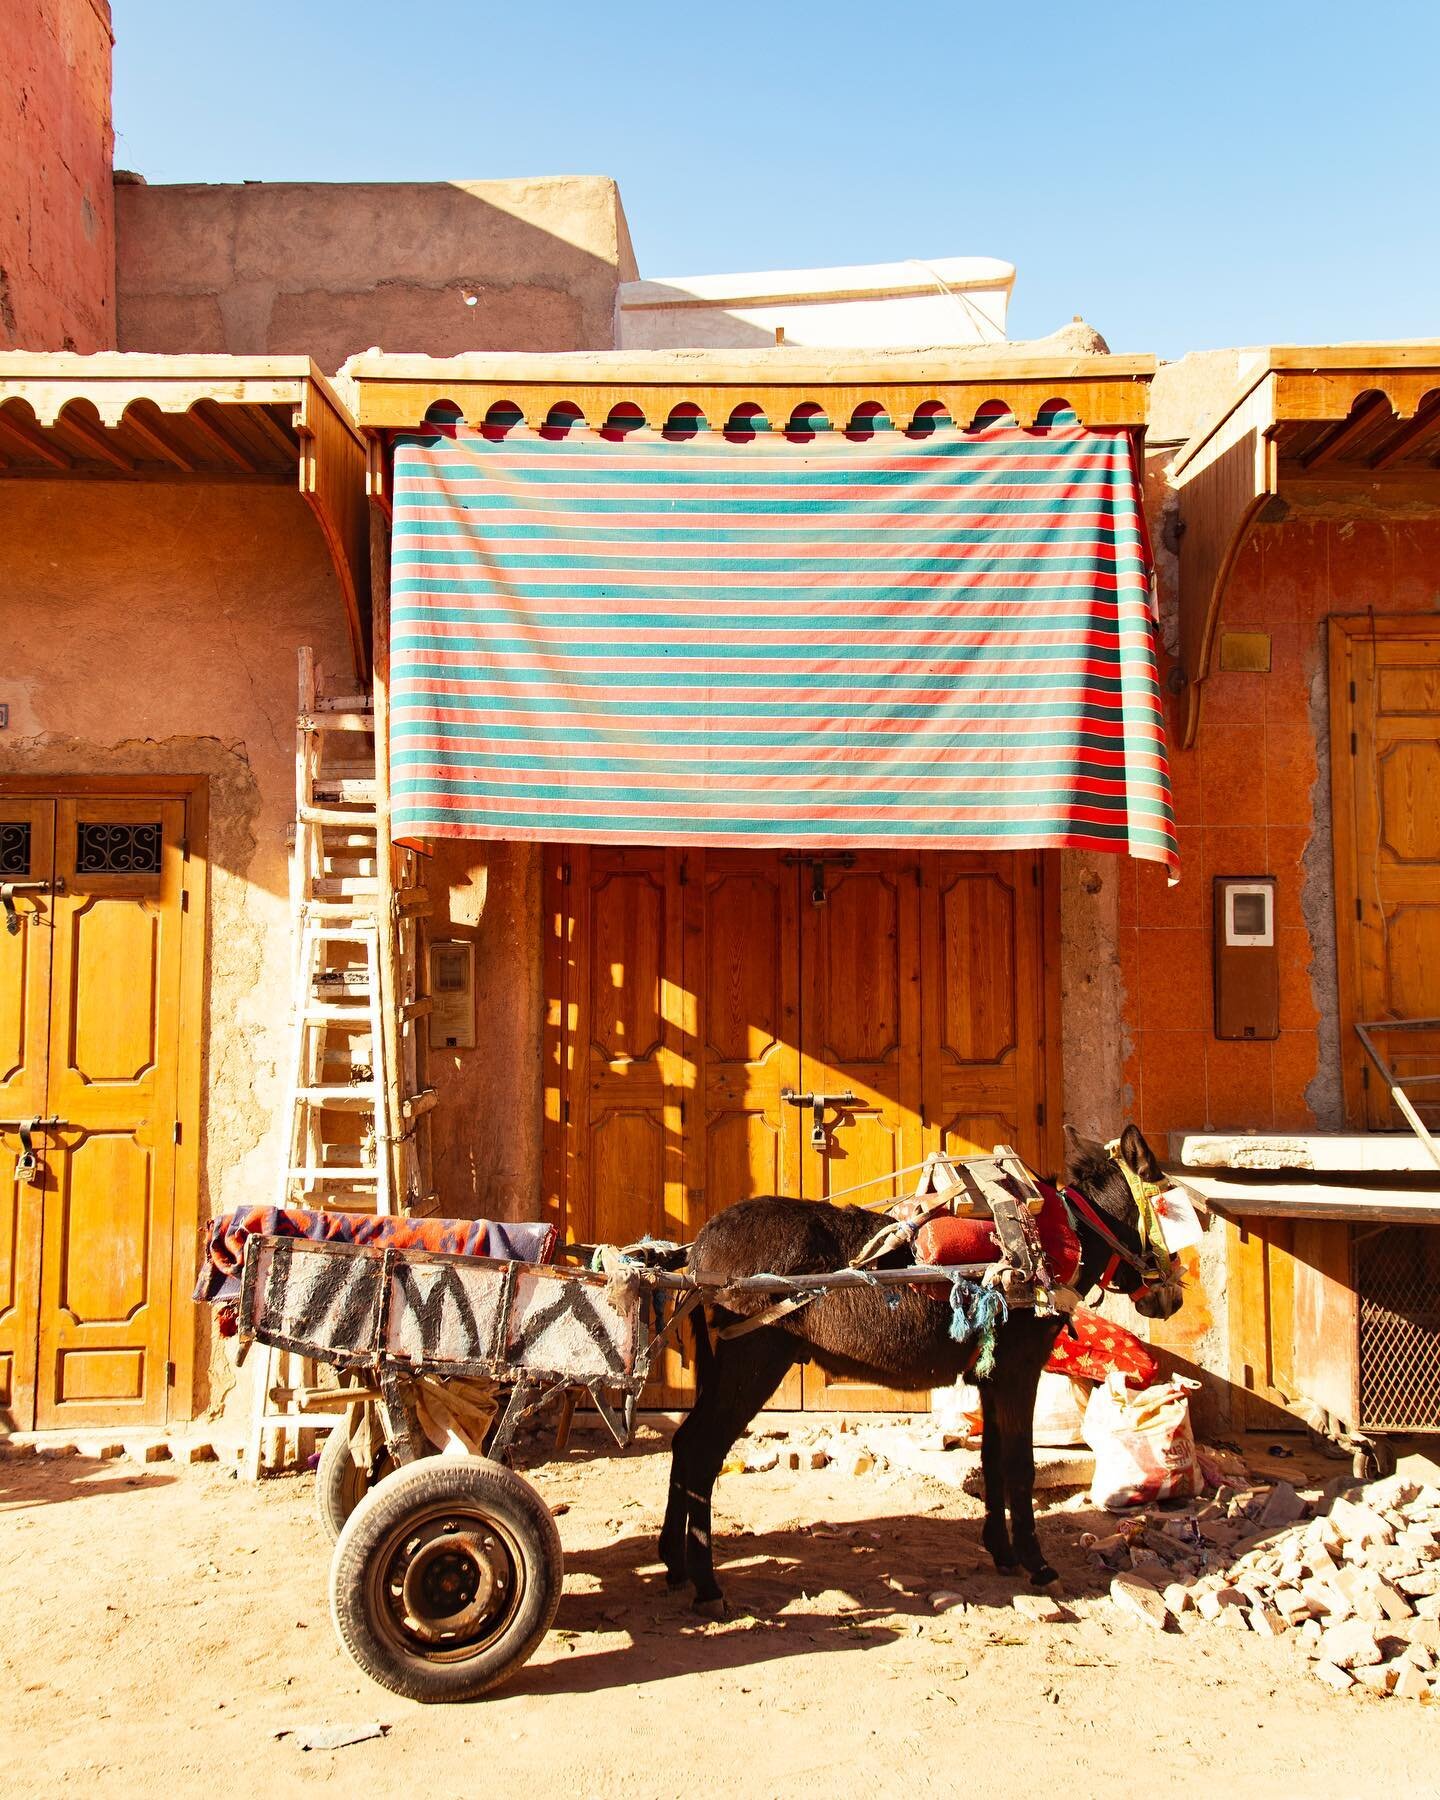 #ElMoukef #Marrakech #Morroco